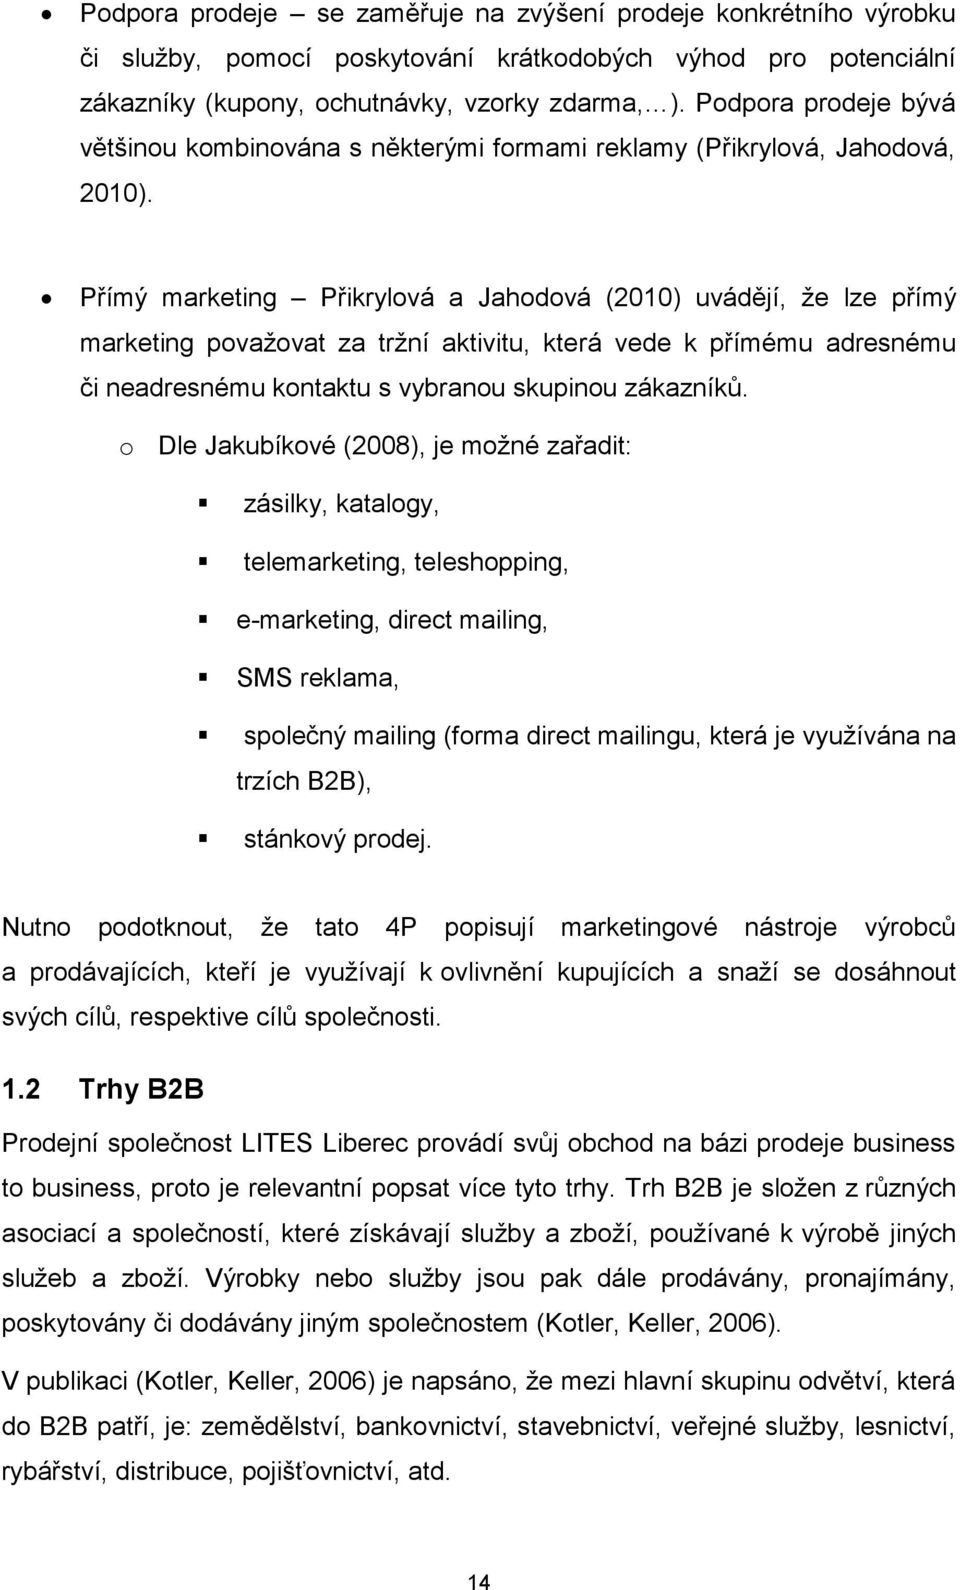 Přímý marketing Přikrylová a Jahodová (2010) uvádějí, že lze přímý marketing považovat za tržní aktivitu, která vede k přímému adresnému či neadresnému kontaktu s vybranou skupinou zákazníků.